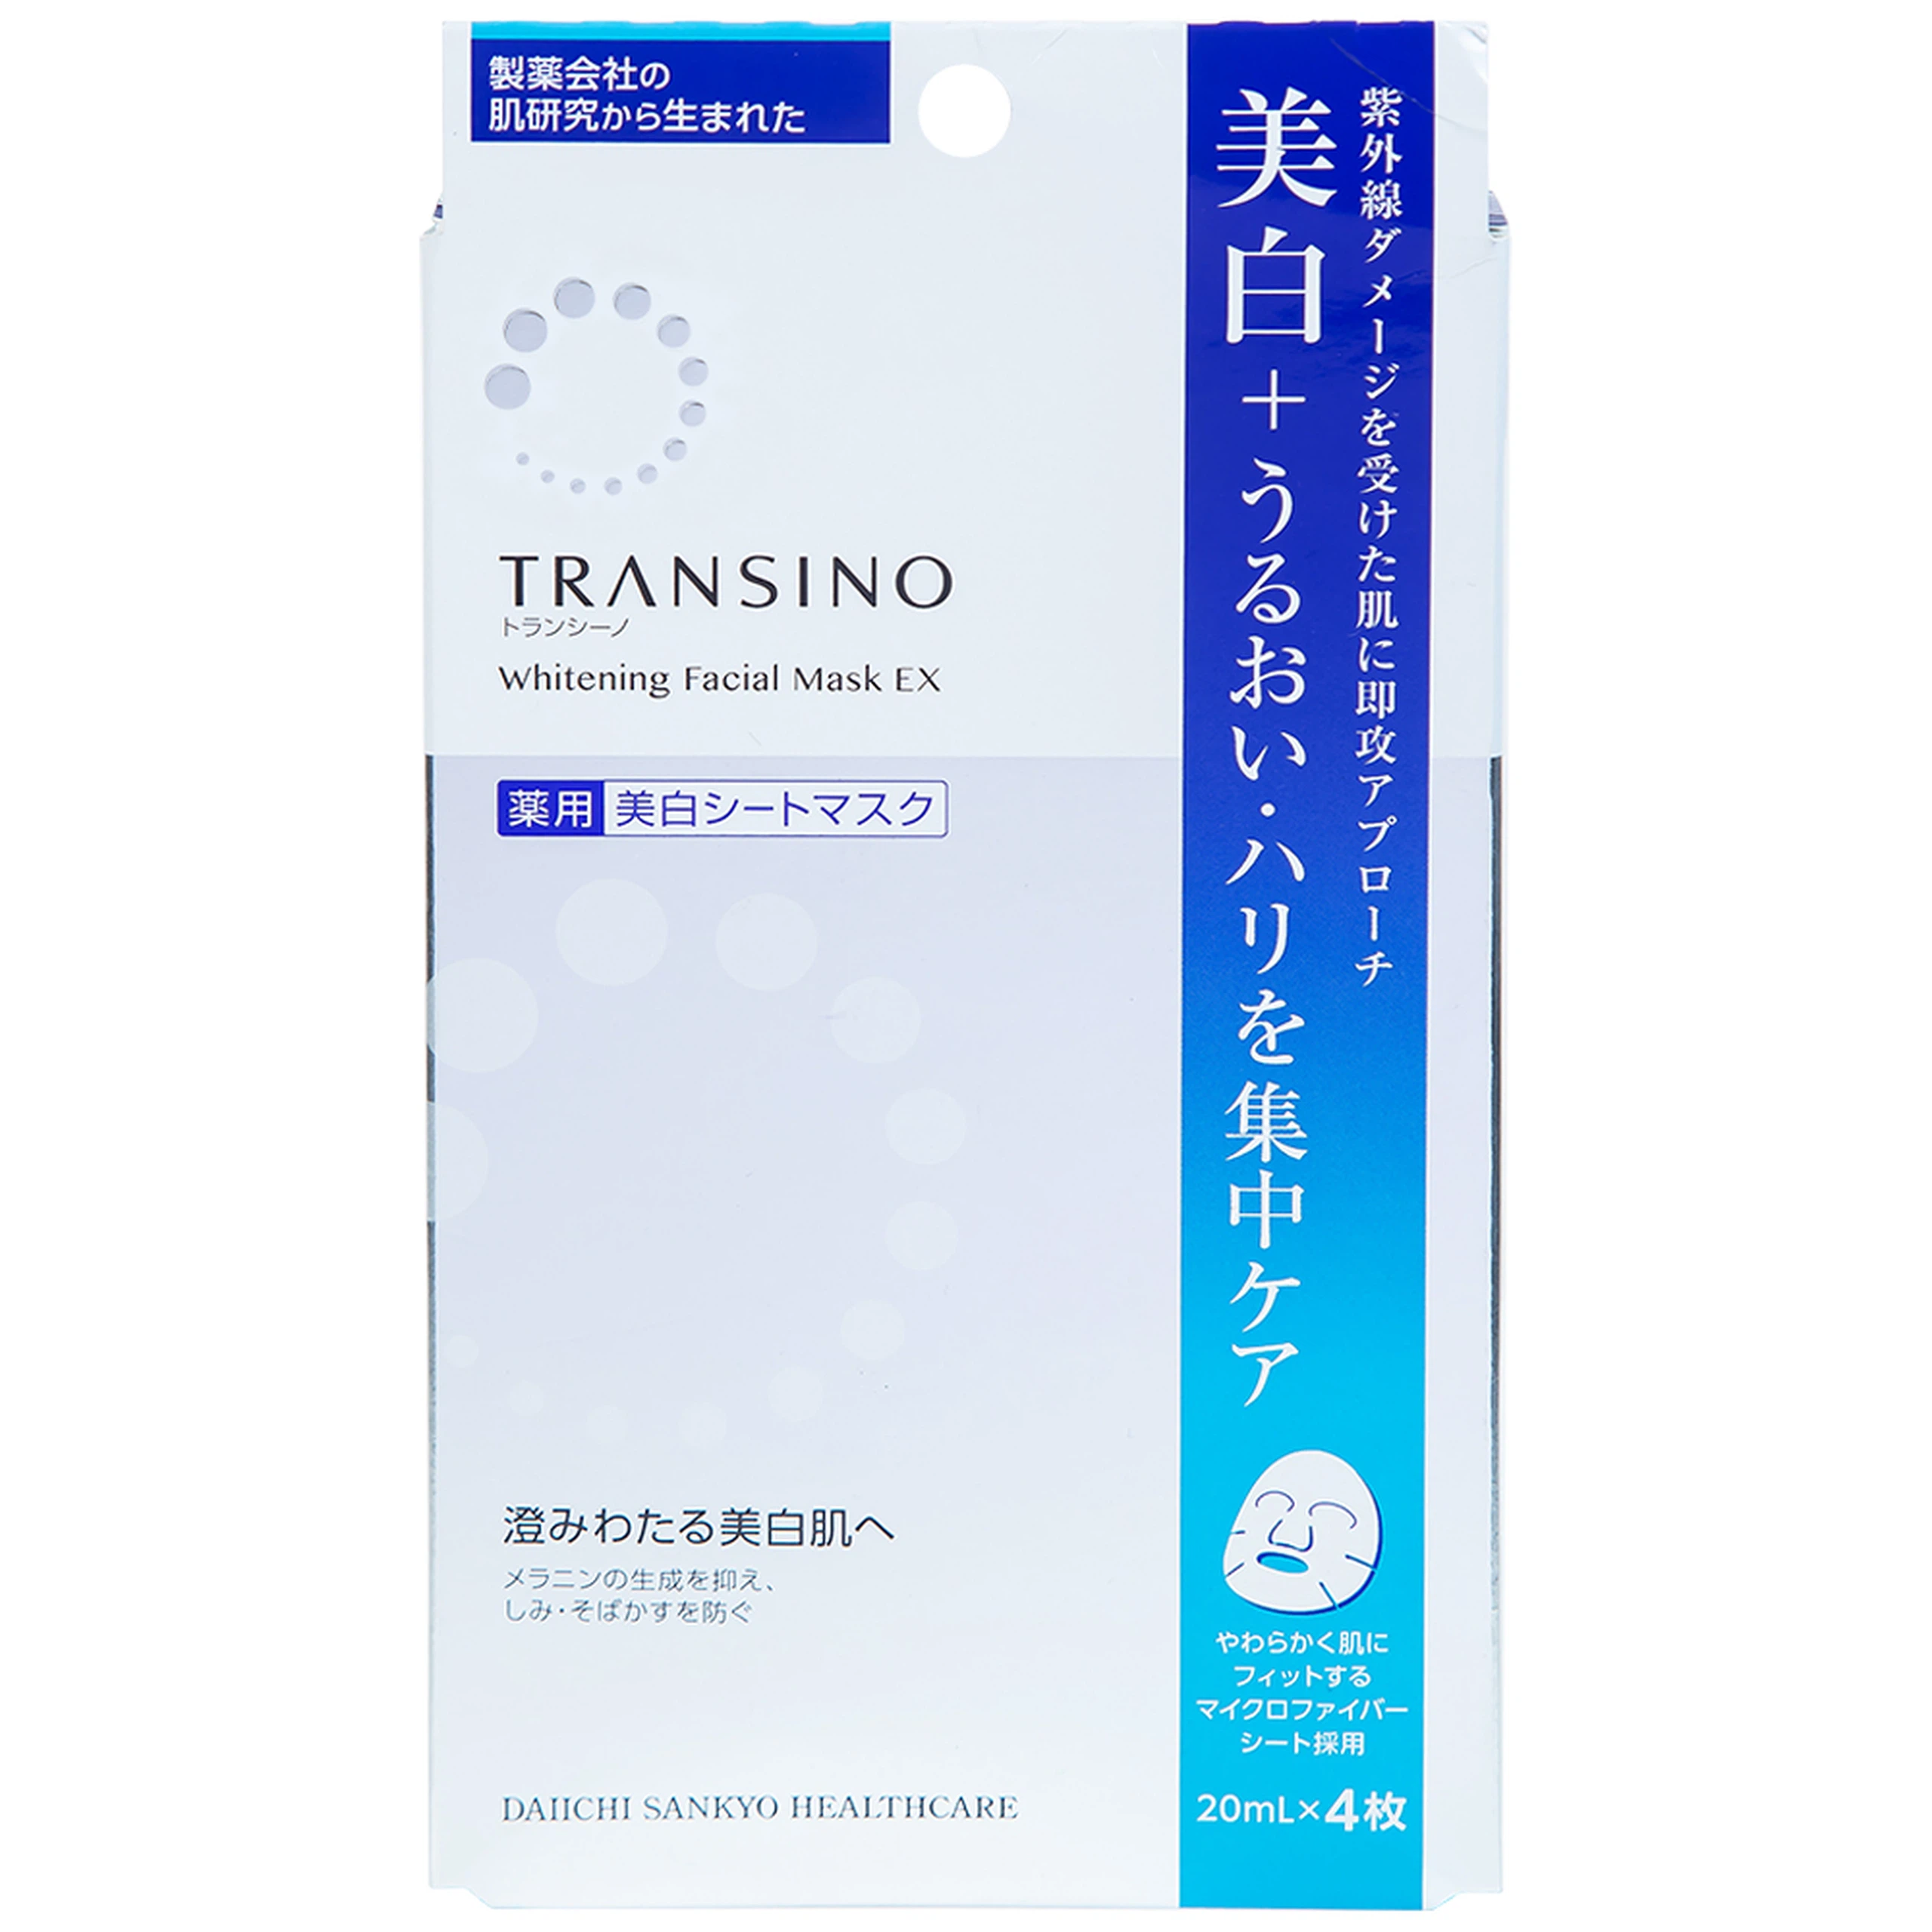 Mặt nạ dưỡng trắng da Transino Whitening Facial Mask EX ngăn ngừa nám và tàn nhang (4 miếng x 20ml)